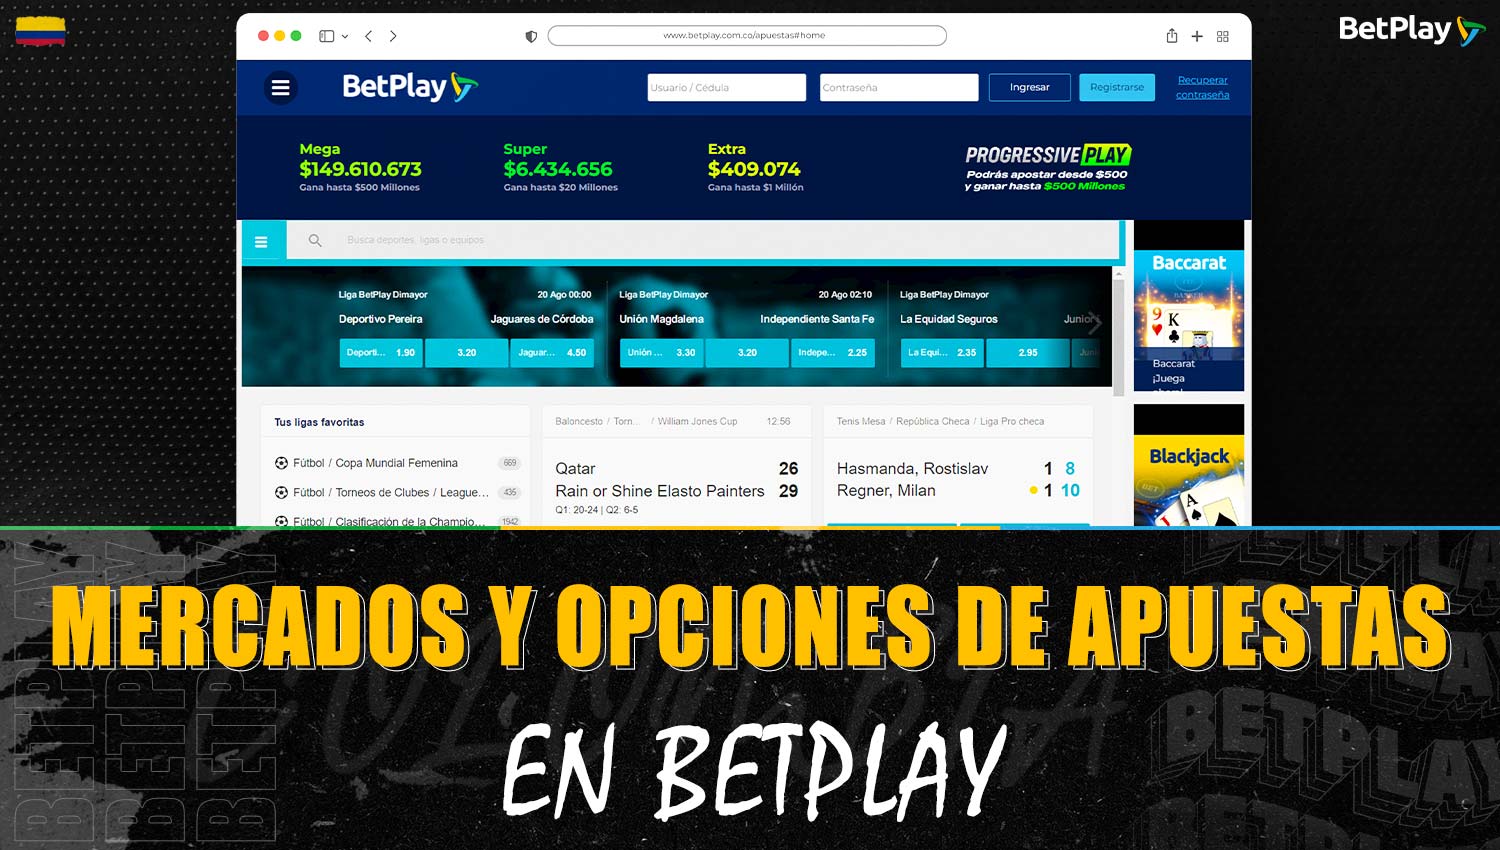 Revisión de los mercados y opciones de apuestas disponibles en la plataforma Betplay